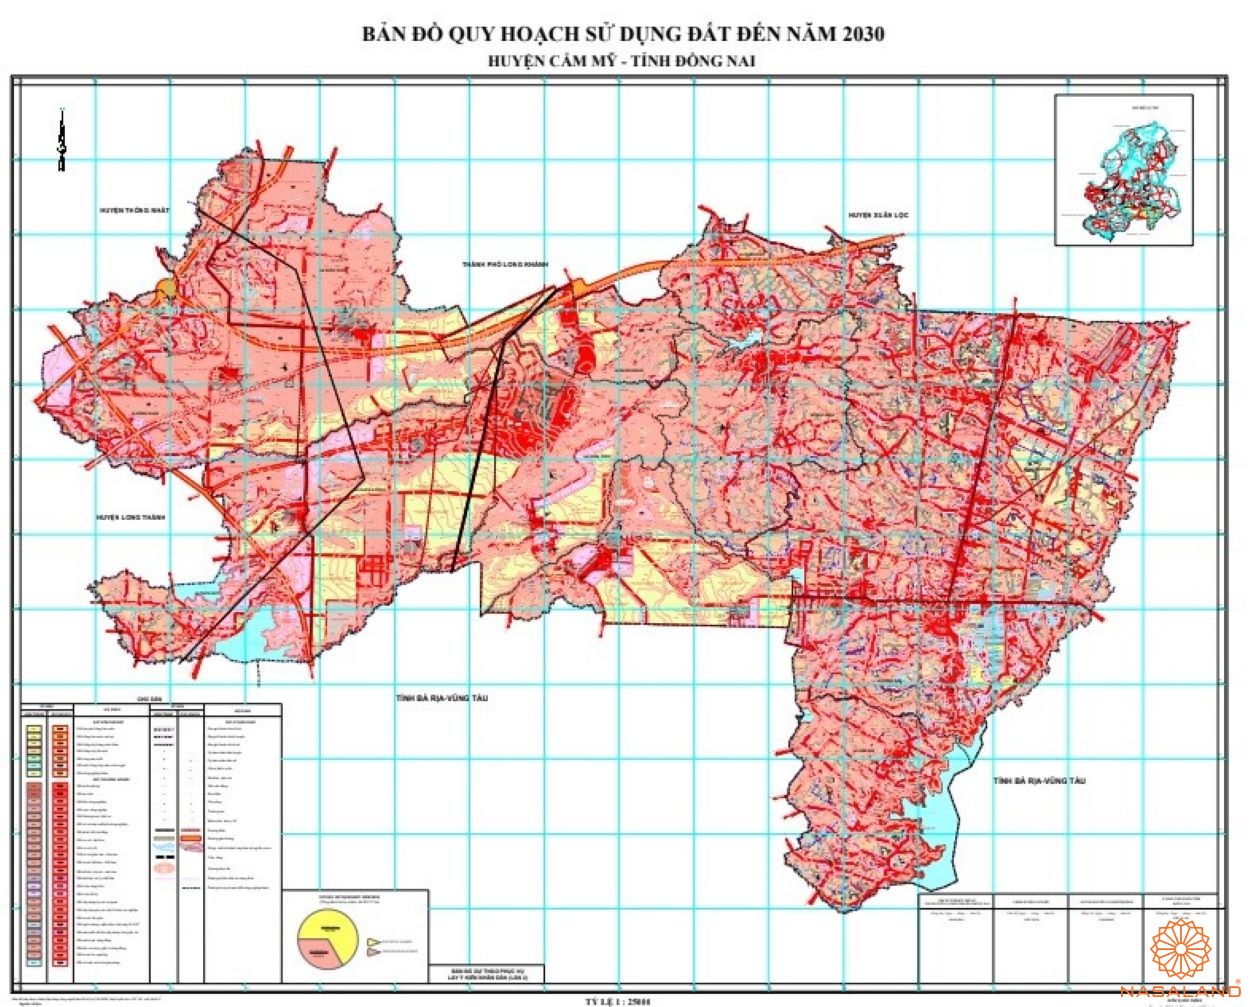 Quy hoạch Huyện Cẩm Mỹ trên bản đồ quy hoạch phân khu tỷ lệ 1/2000 của Tỉnh Đồng Nai